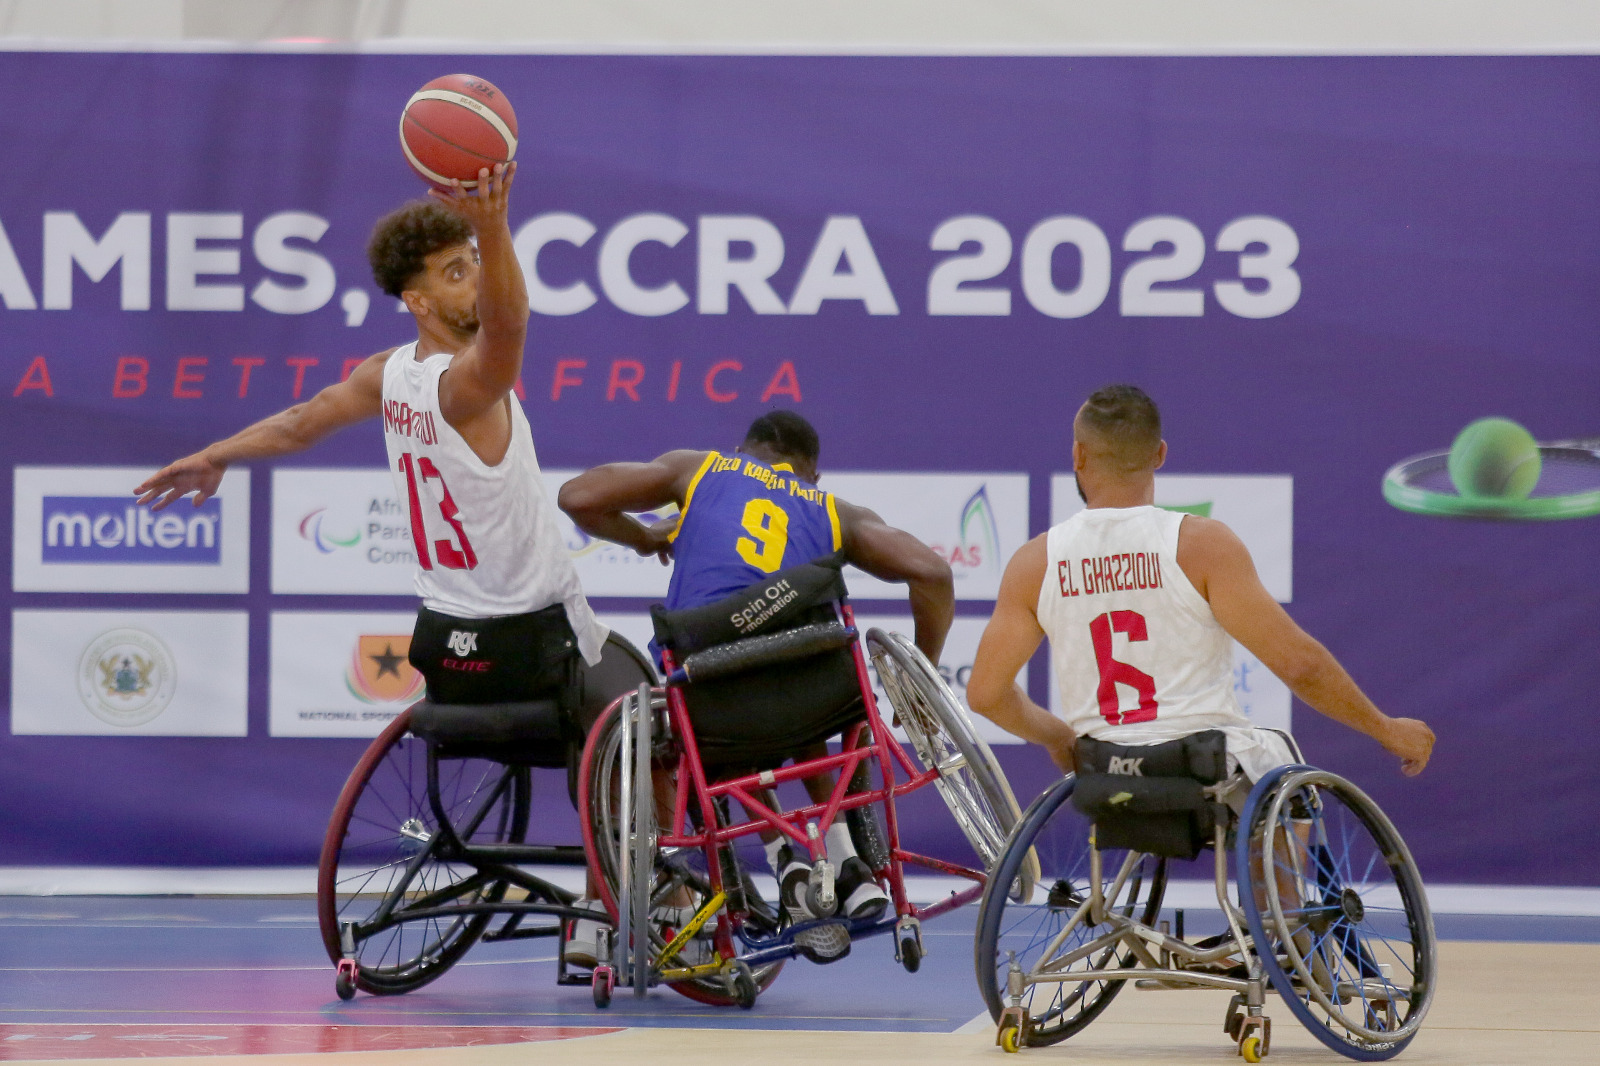 Jeux africains paralympiques/Handibasket (hommes): Le Maroc bat la RD Congo (100-22)